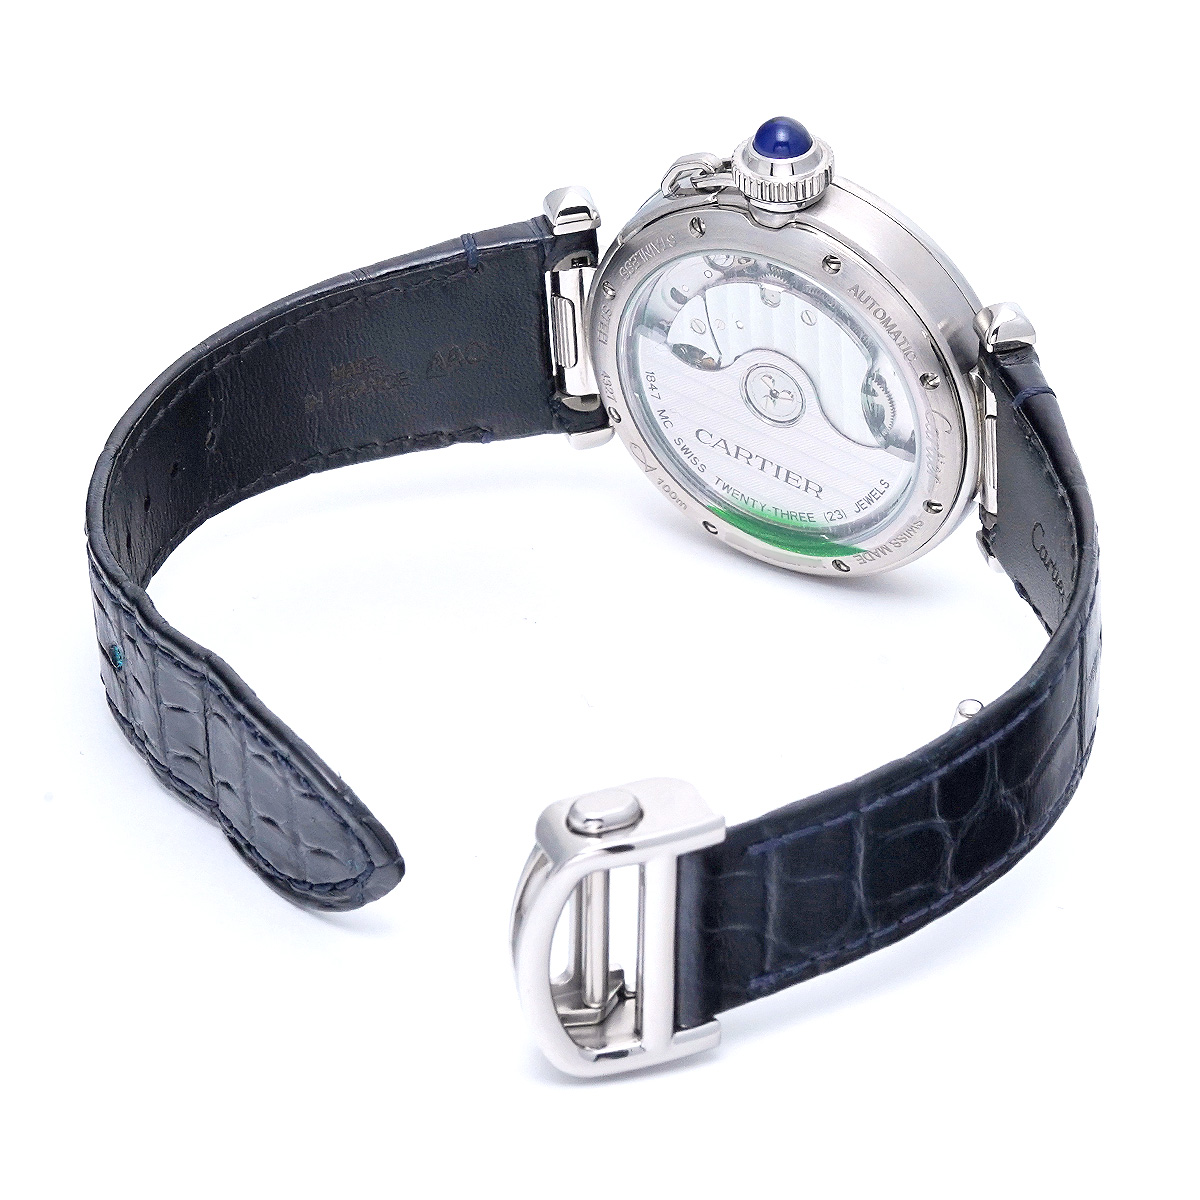 カルティエ パシャ ドゥ カルティエ 35mm WSPA0012 シルバー ユニセックス 時計 【中古】【wristwatch】